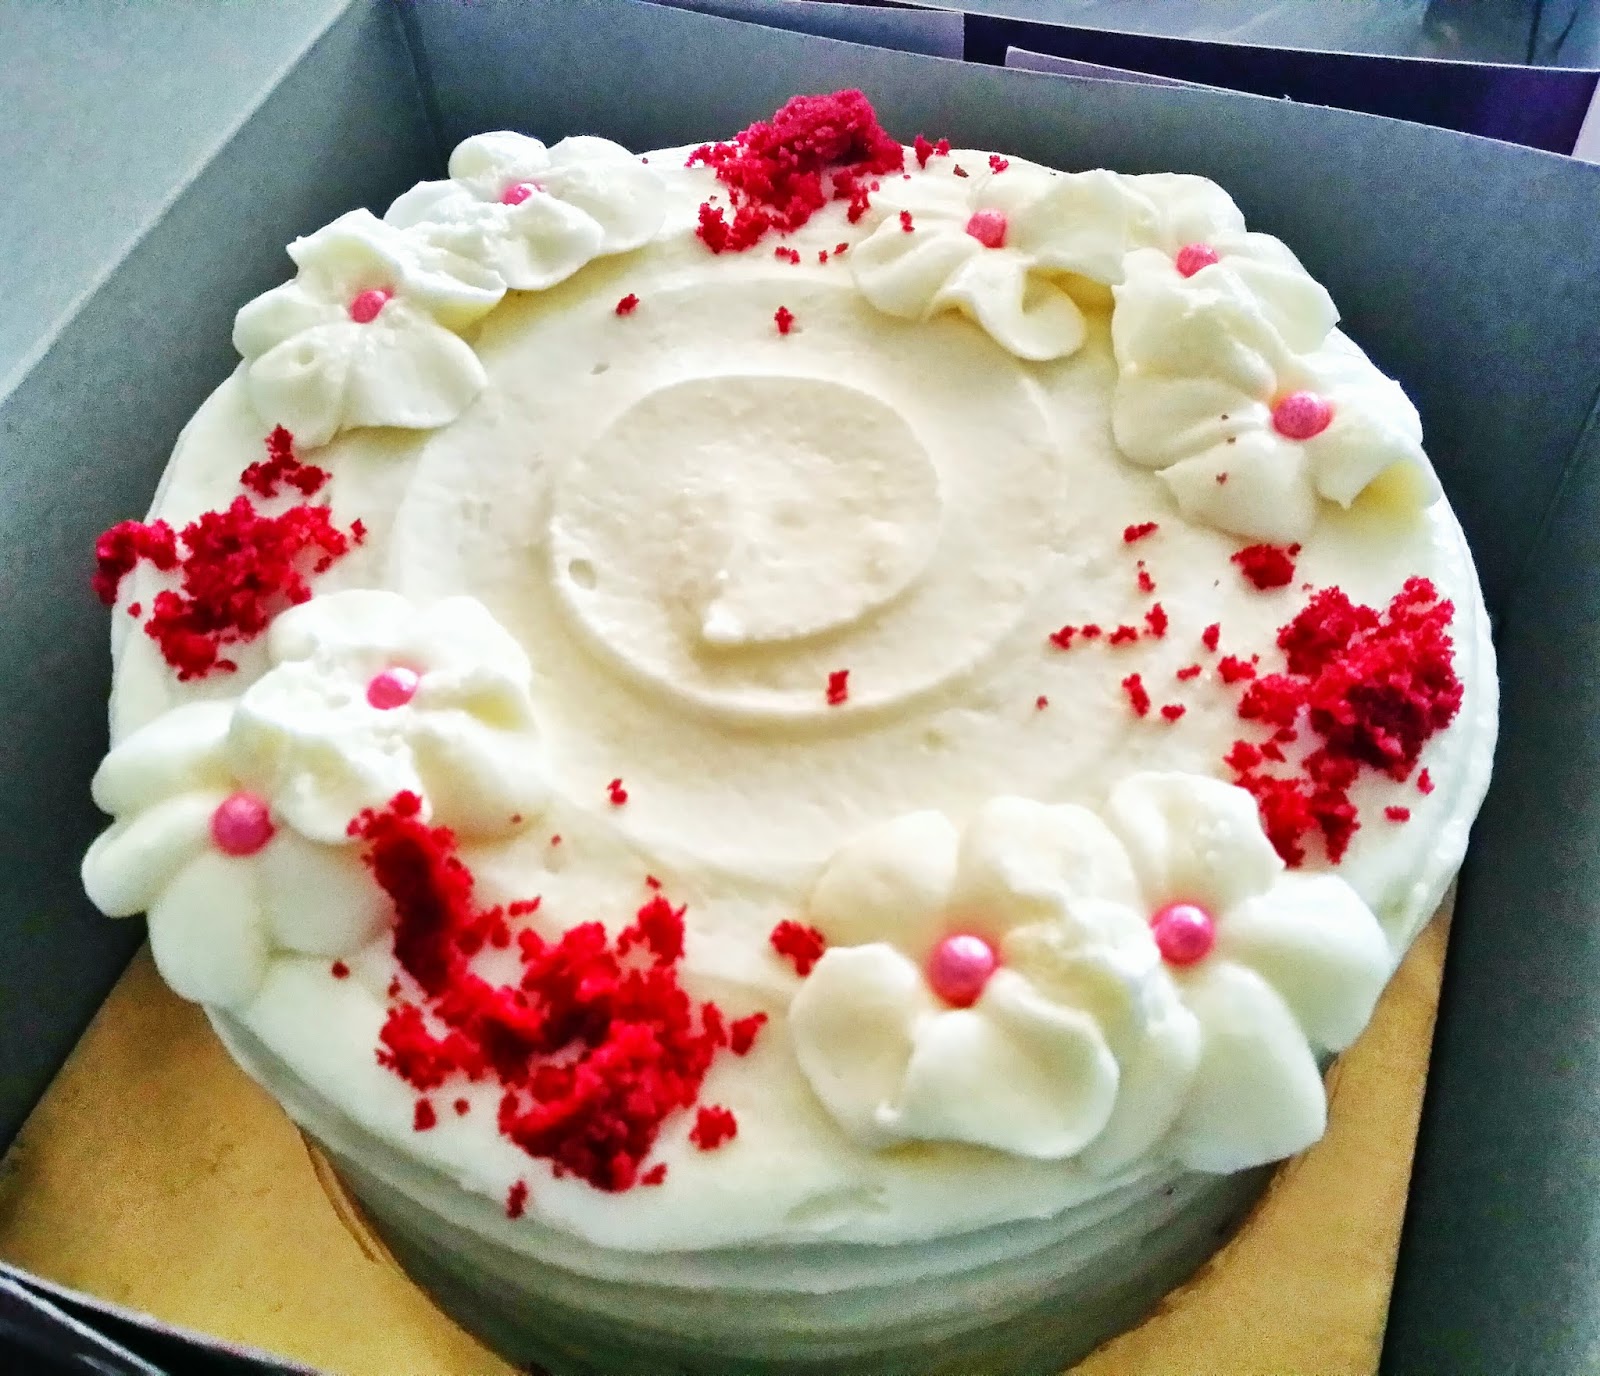 LoveSimplyIrresistible : Homemade Kek Yang Sedap, Murah 